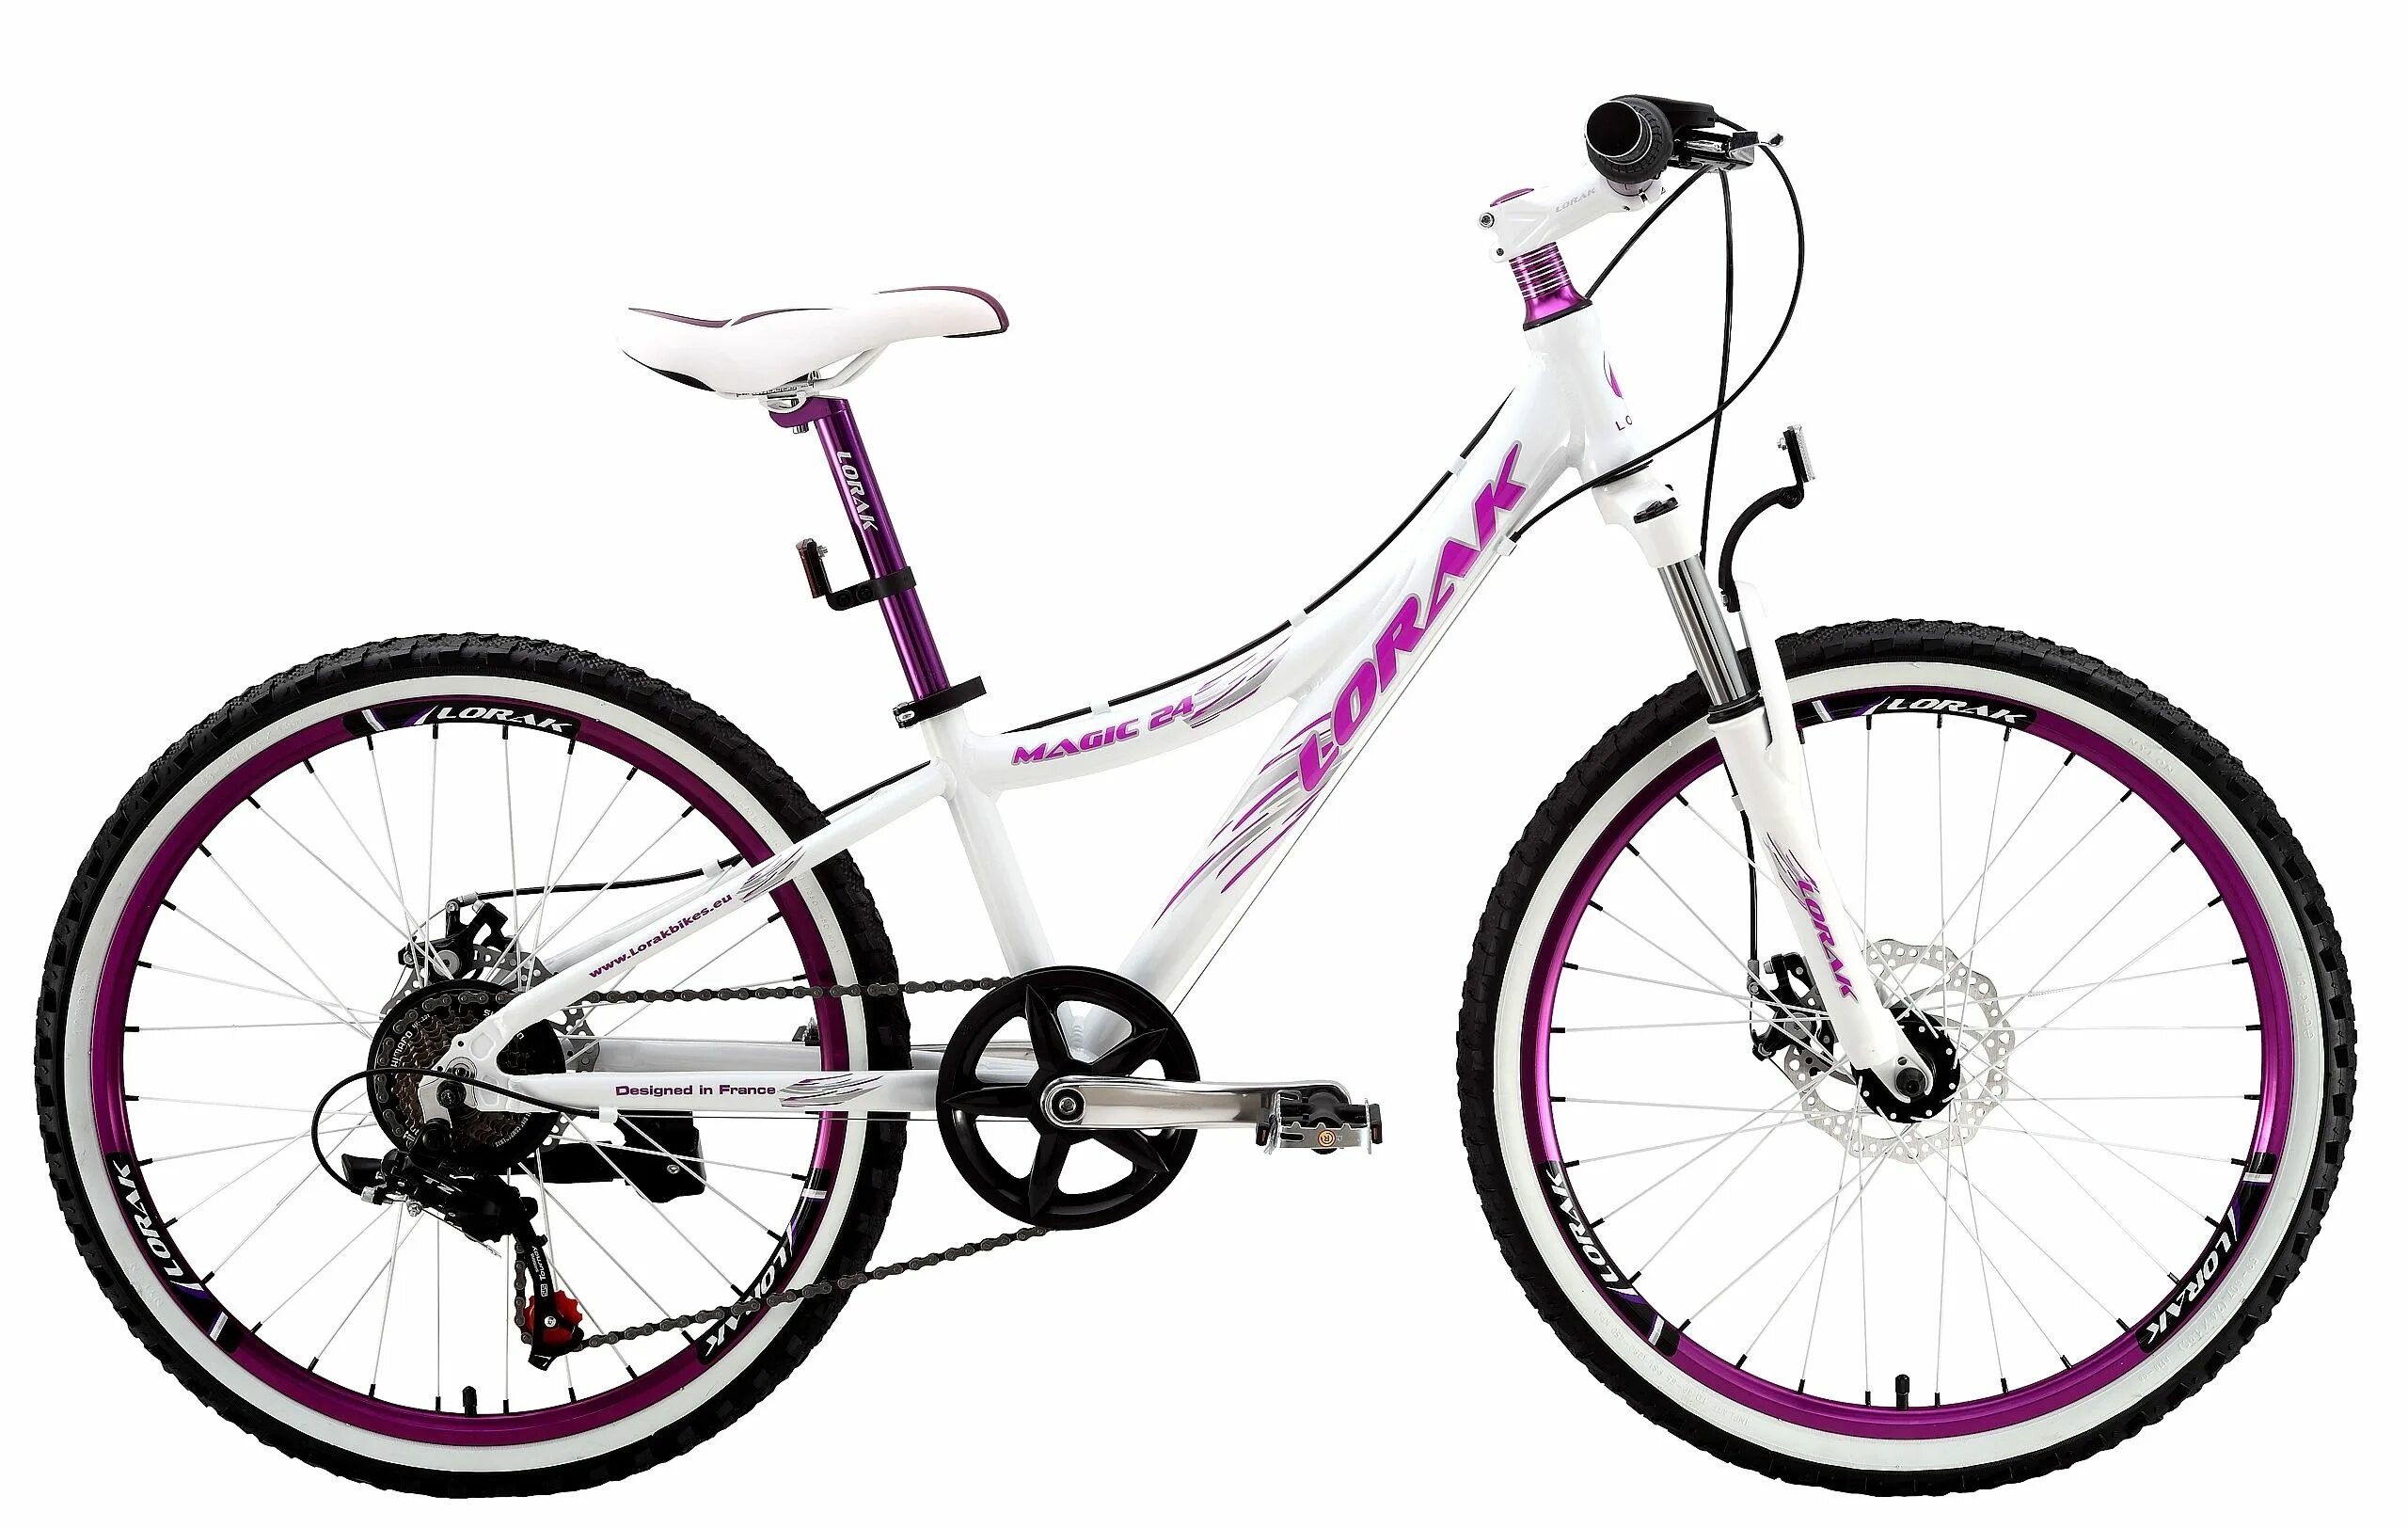 Велосипед женский 24. Велосипед Лорак Мэджик 24. Детский велосипед Lorak Magic 24. Велосипед Лорак 24 дюйма. Подростковый горный (MTB) велосипед Lorak Magic 24 21s (2015).